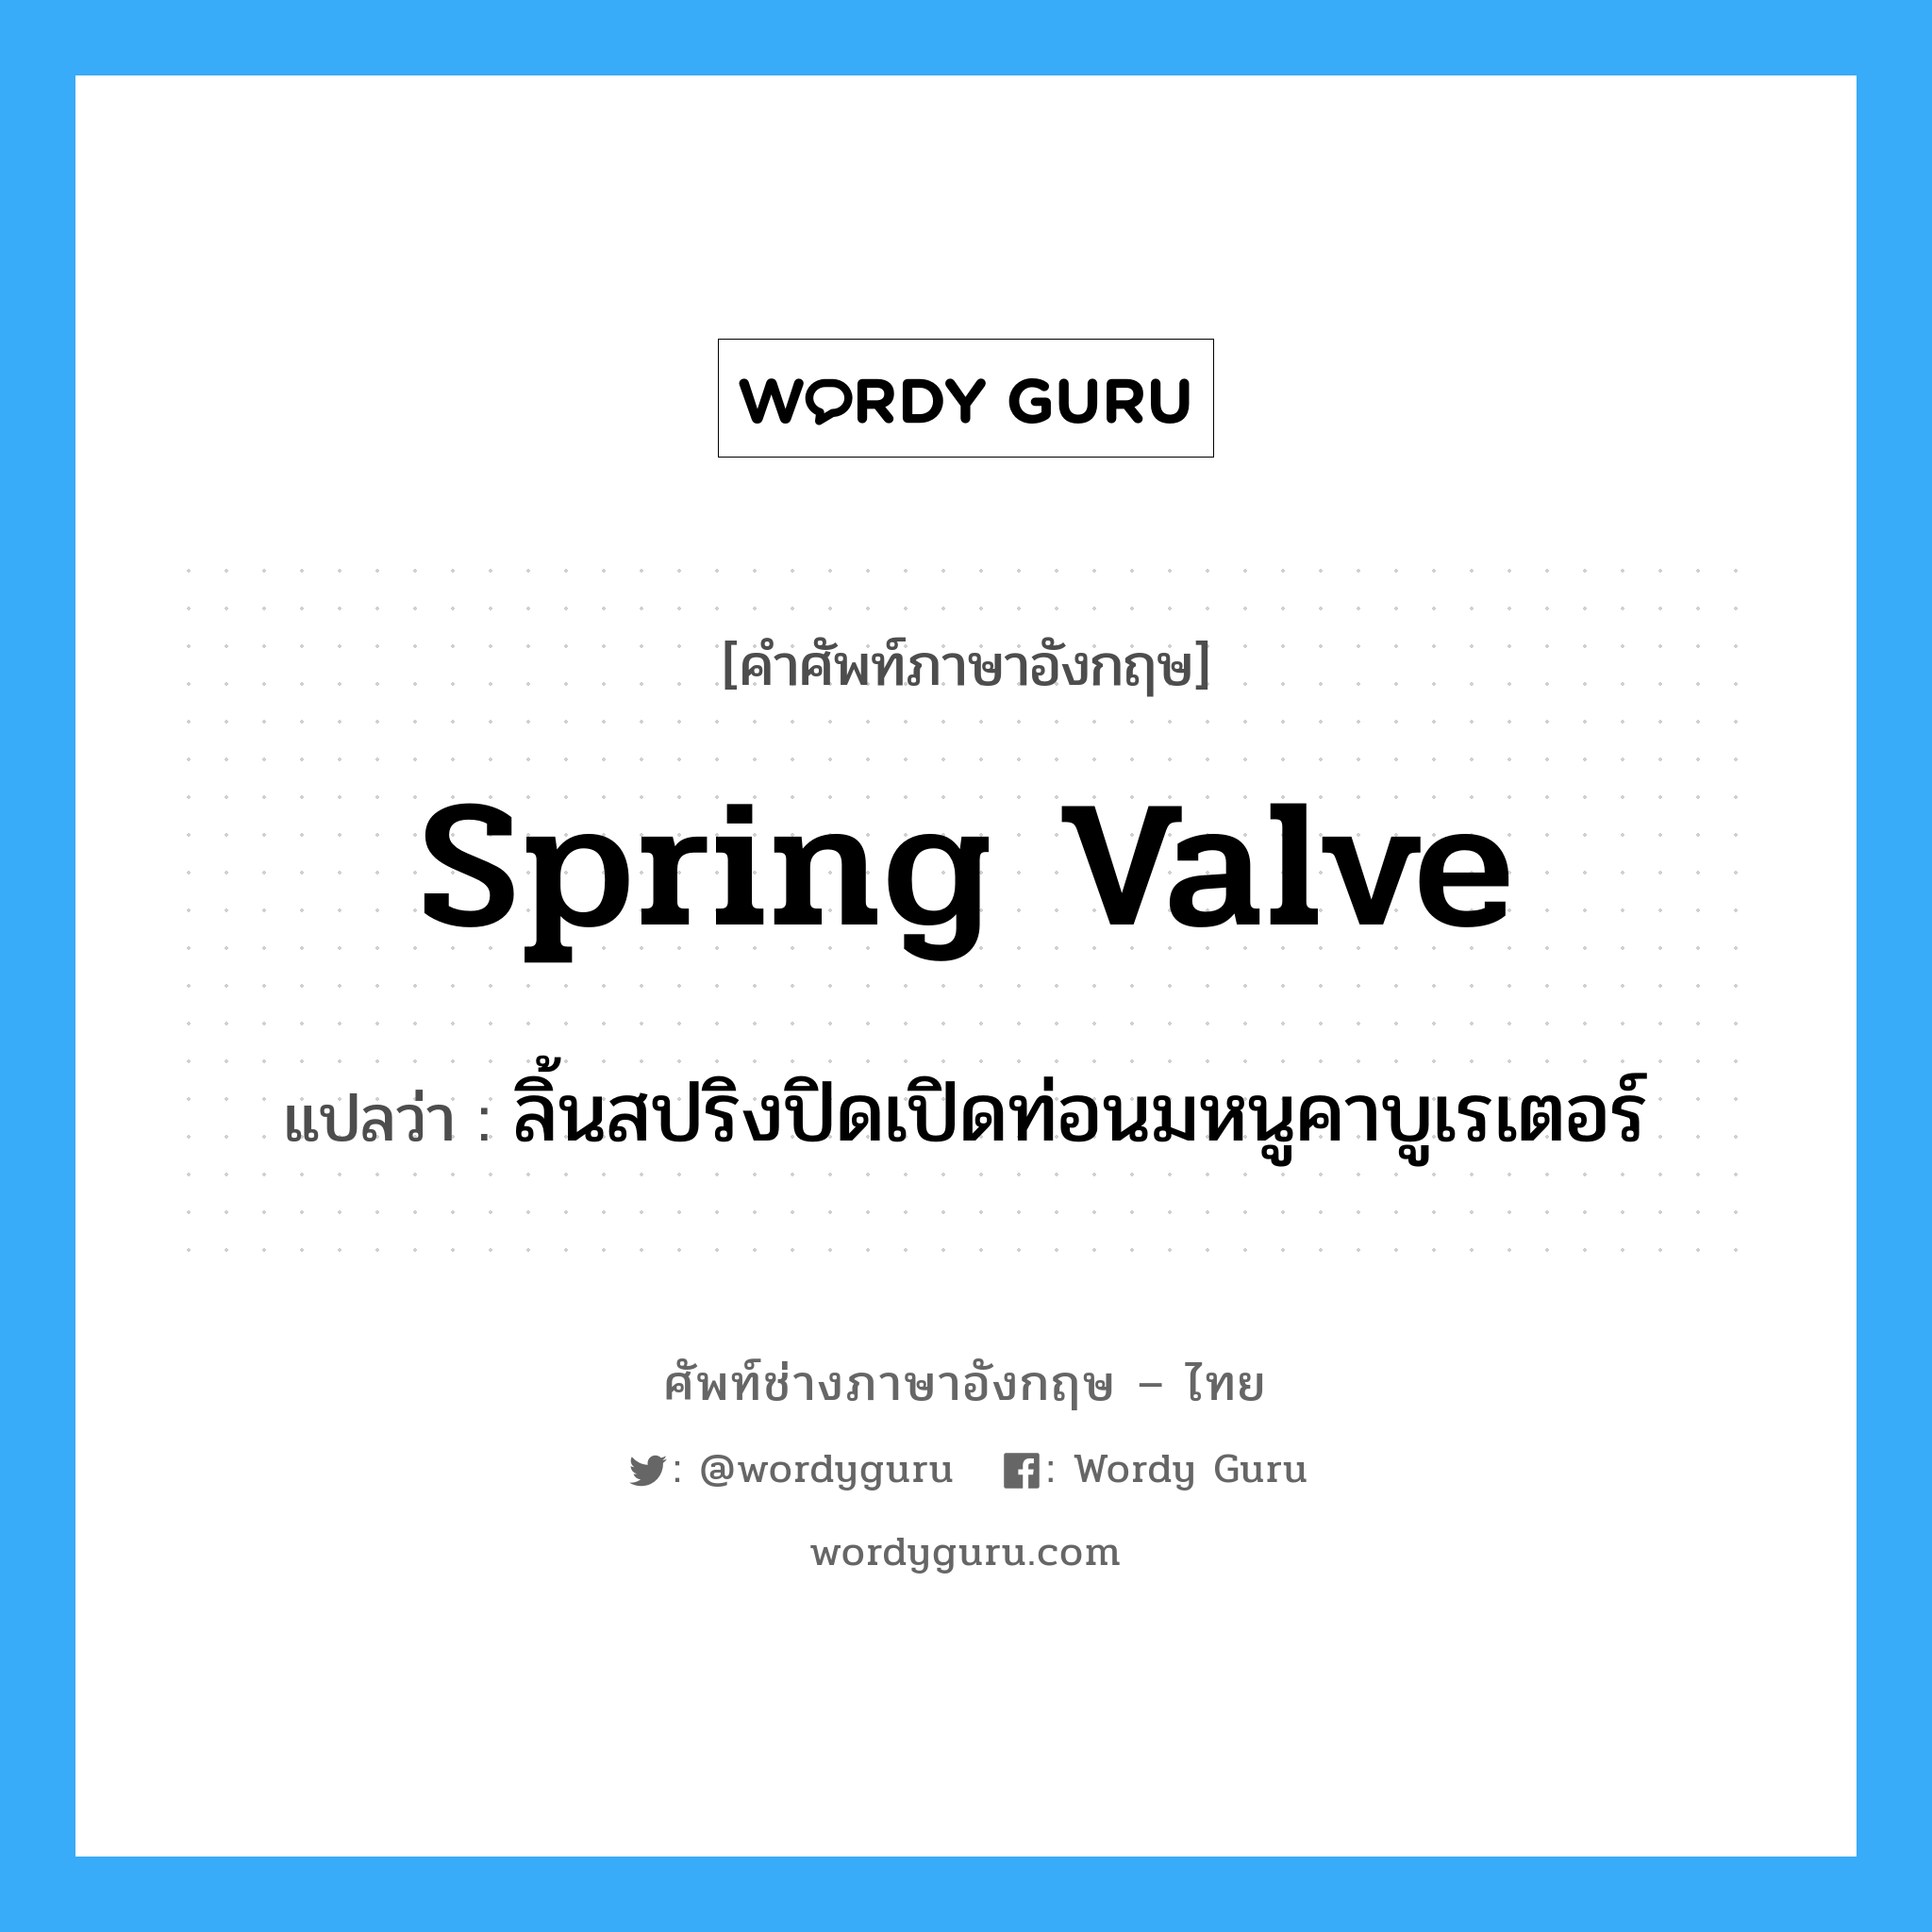 spring valve แปลว่า?, คำศัพท์ช่างภาษาอังกฤษ - ไทย spring valve คำศัพท์ภาษาอังกฤษ spring valve แปลว่า ลิ้นสปริงปิดเปิดท่อนมหนูคาบูเรเตอร์